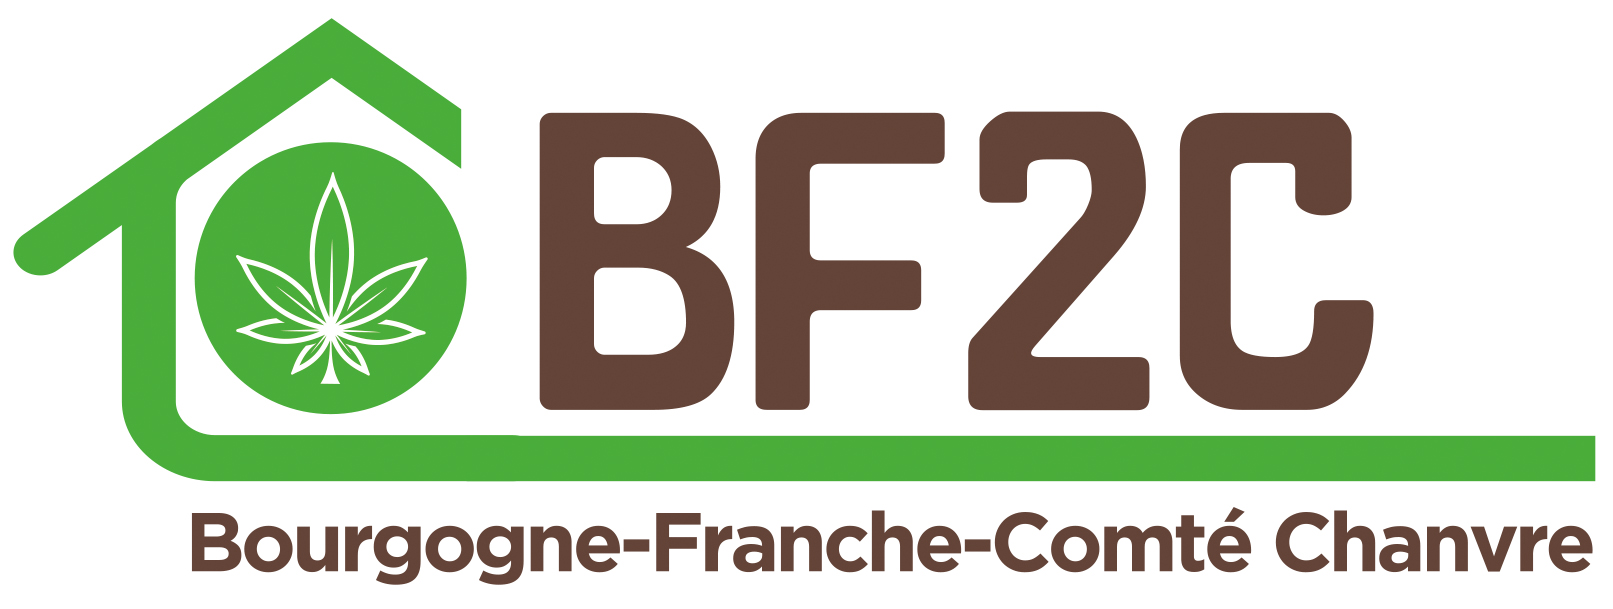 BF2C Bourgogne Franche Comté Chanvre